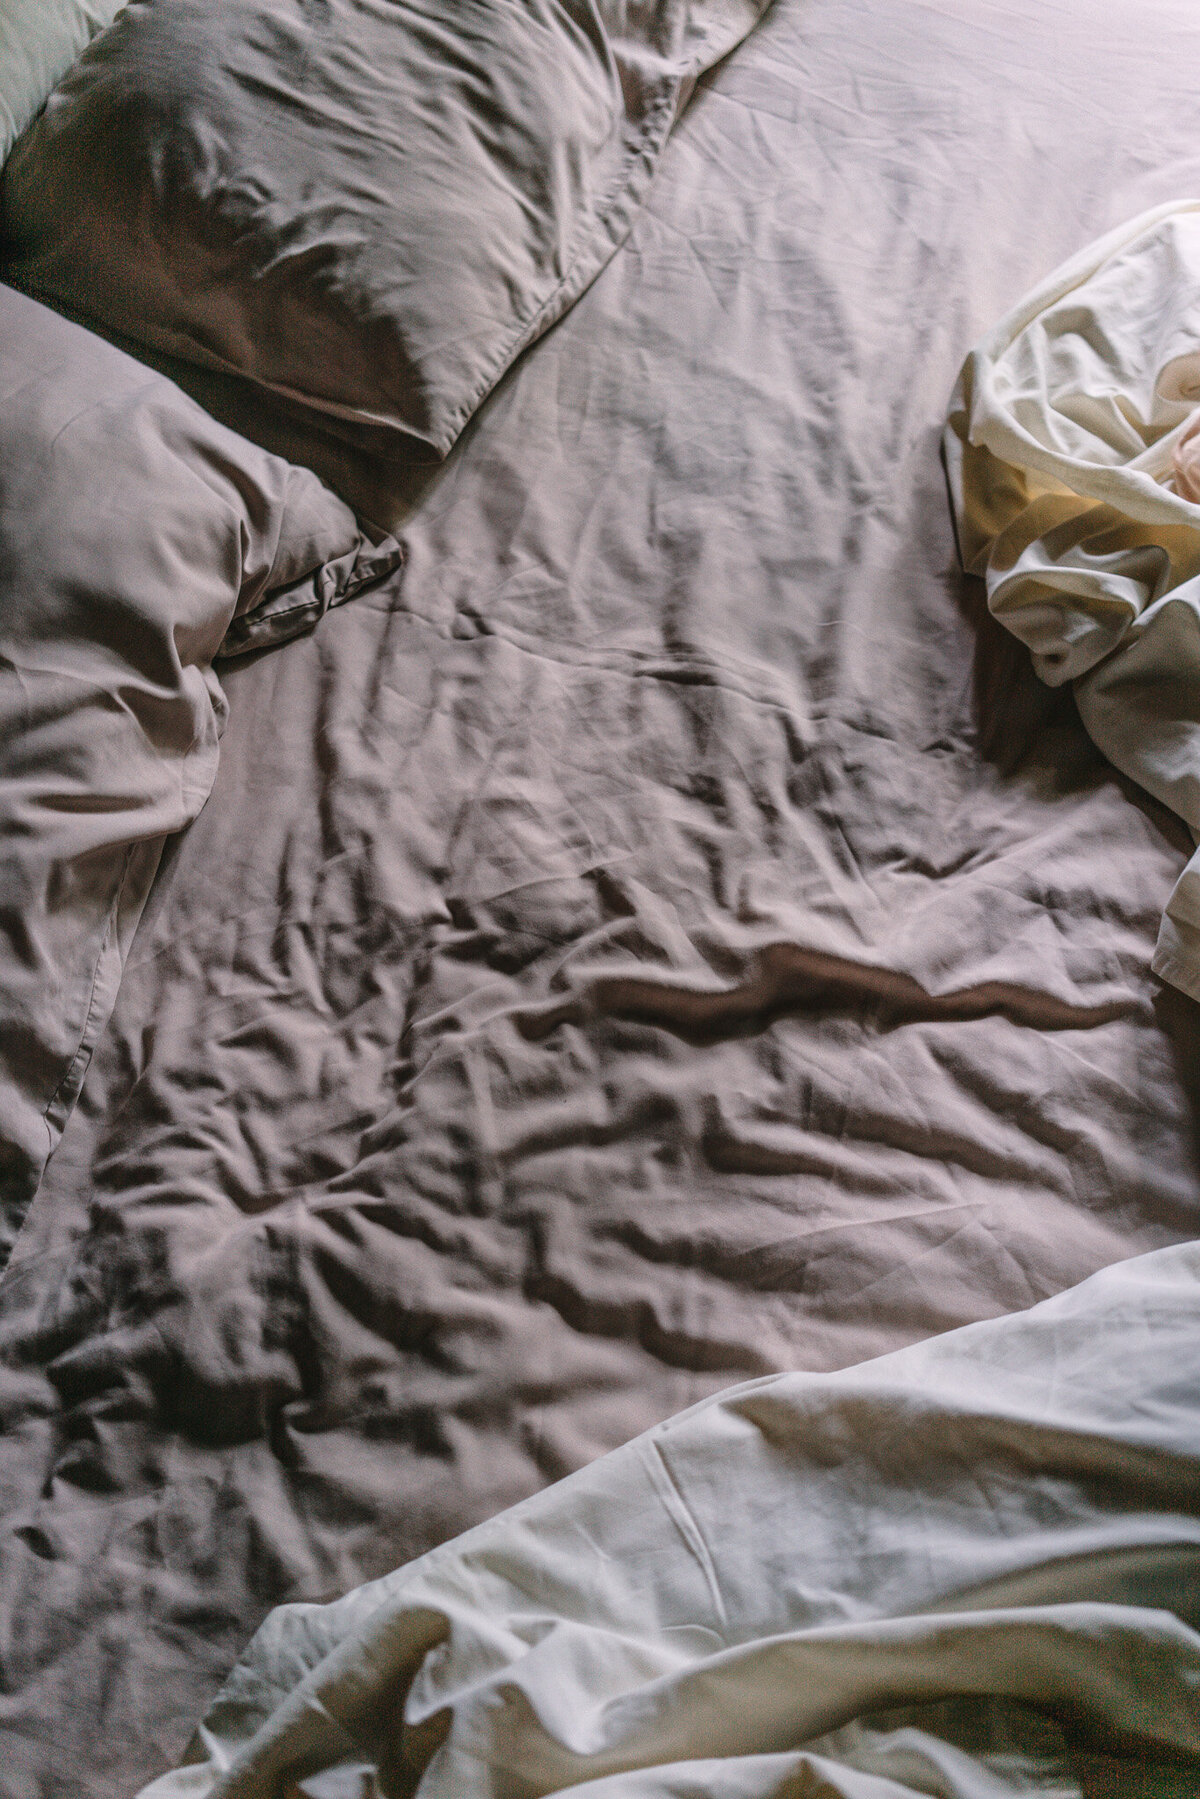 Wrinkled bedding